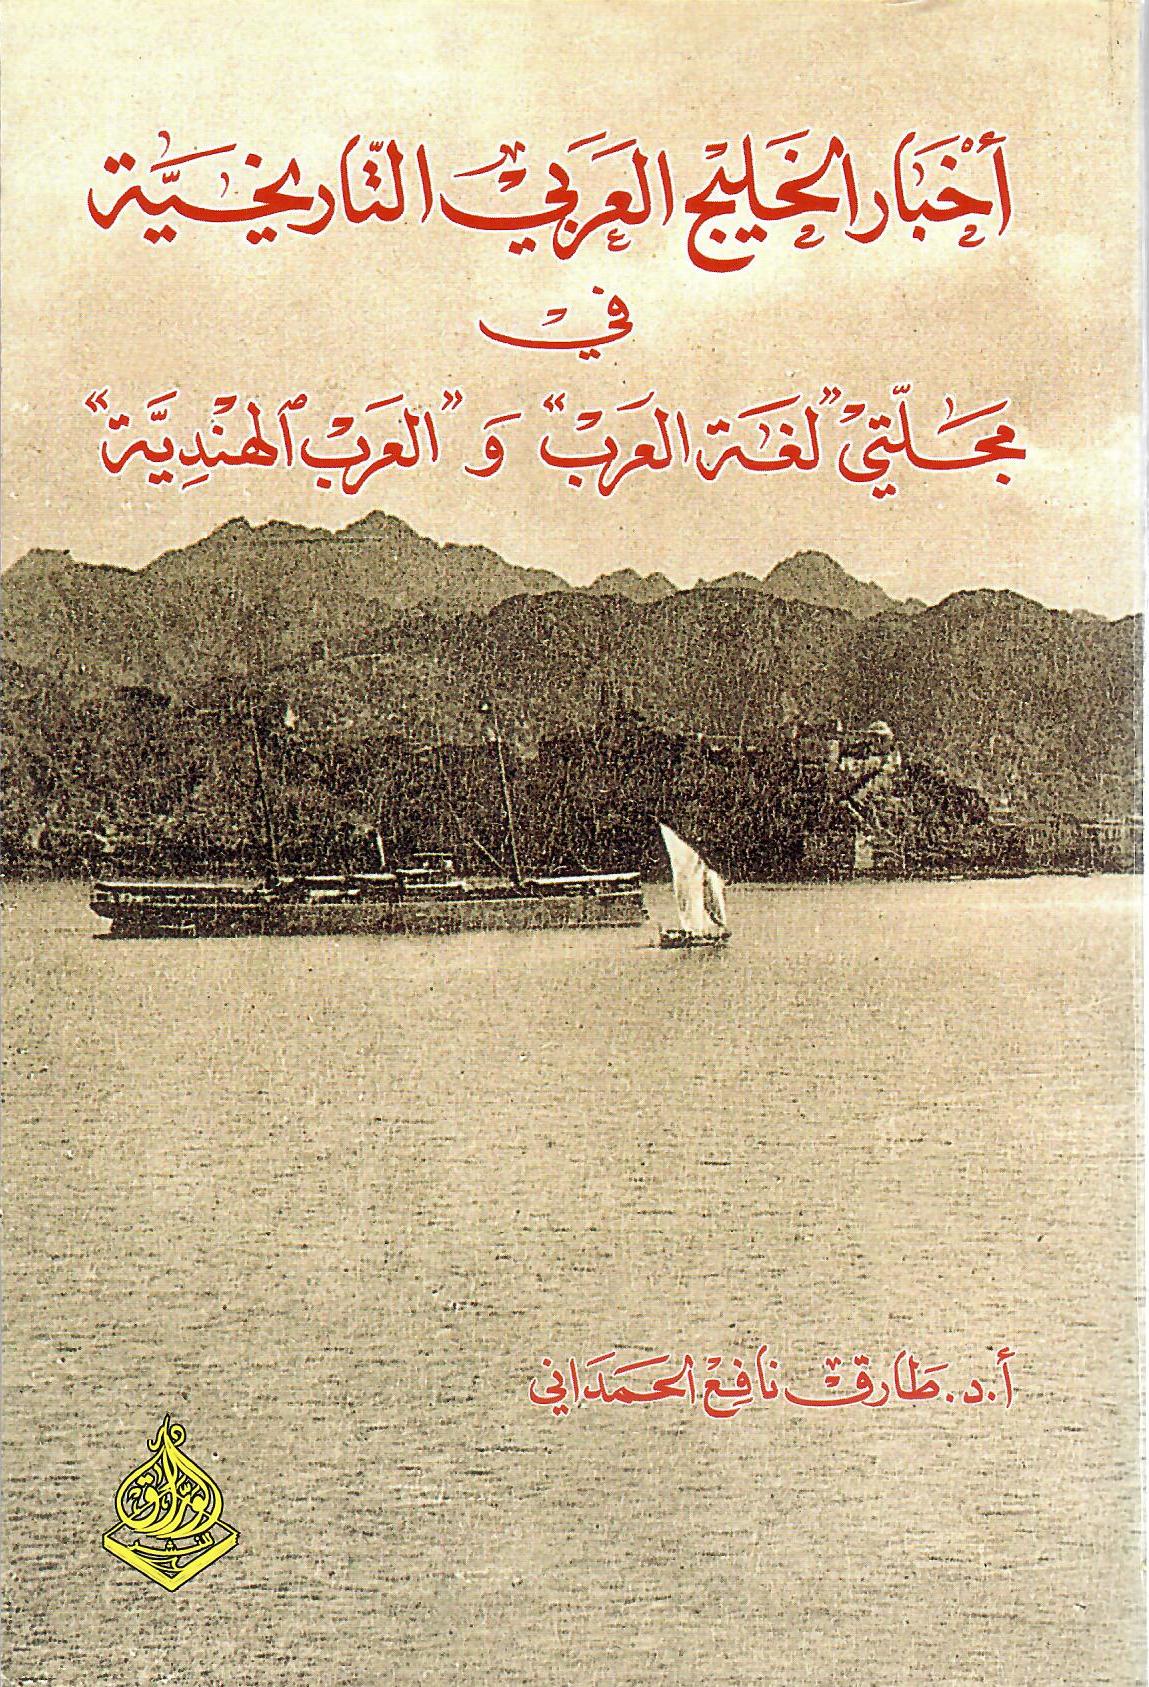 أخبار الخليج العربي التاريخية في مجلتي لغة العرب والعرب الهندية